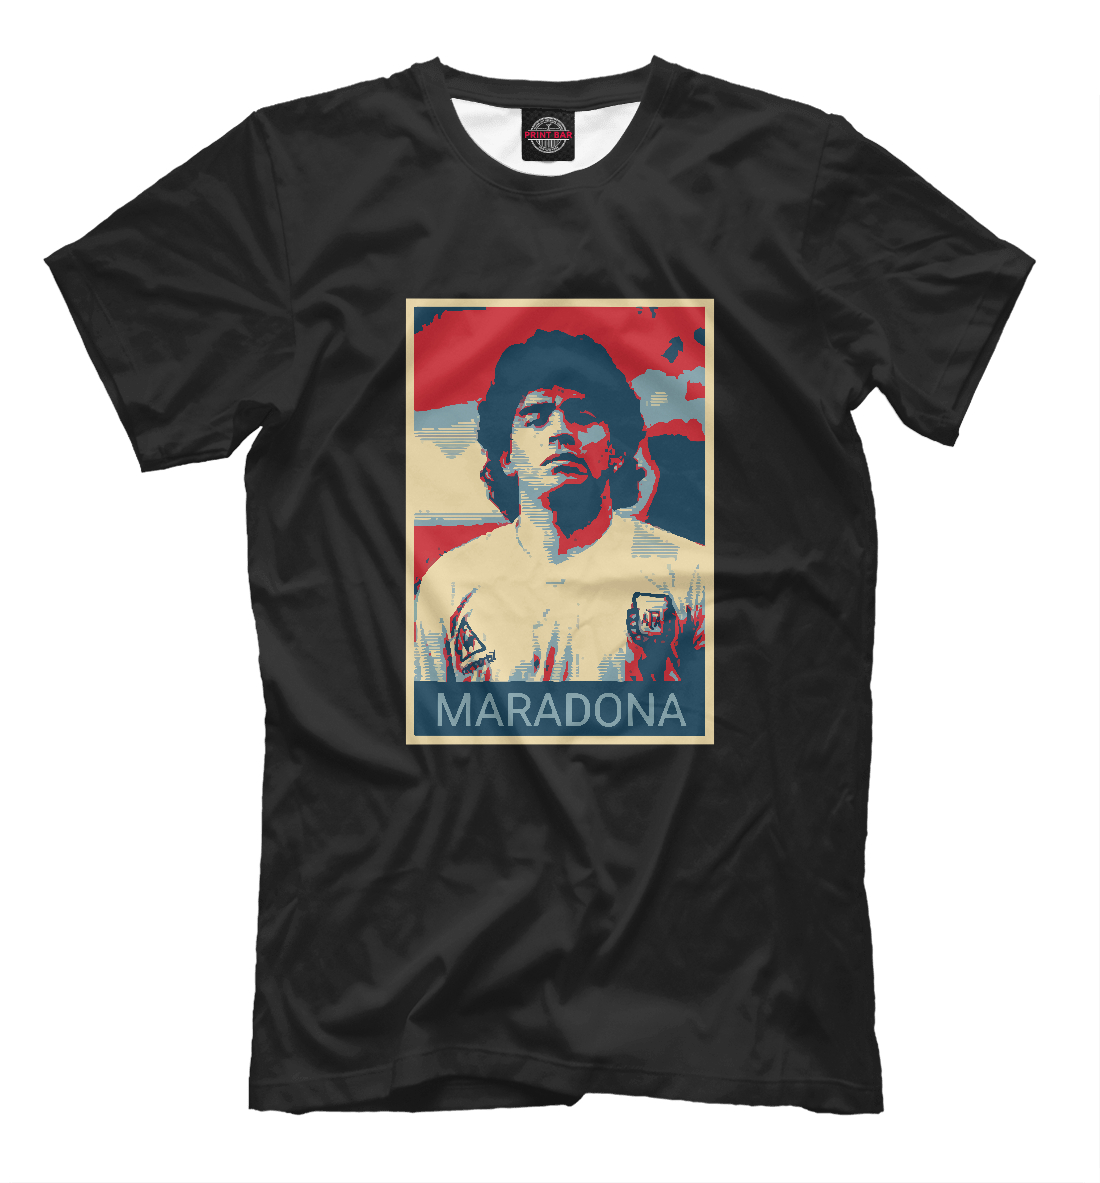 Футболка Maradona для мальчиков, артикул: FLT-836145-fut-2mp